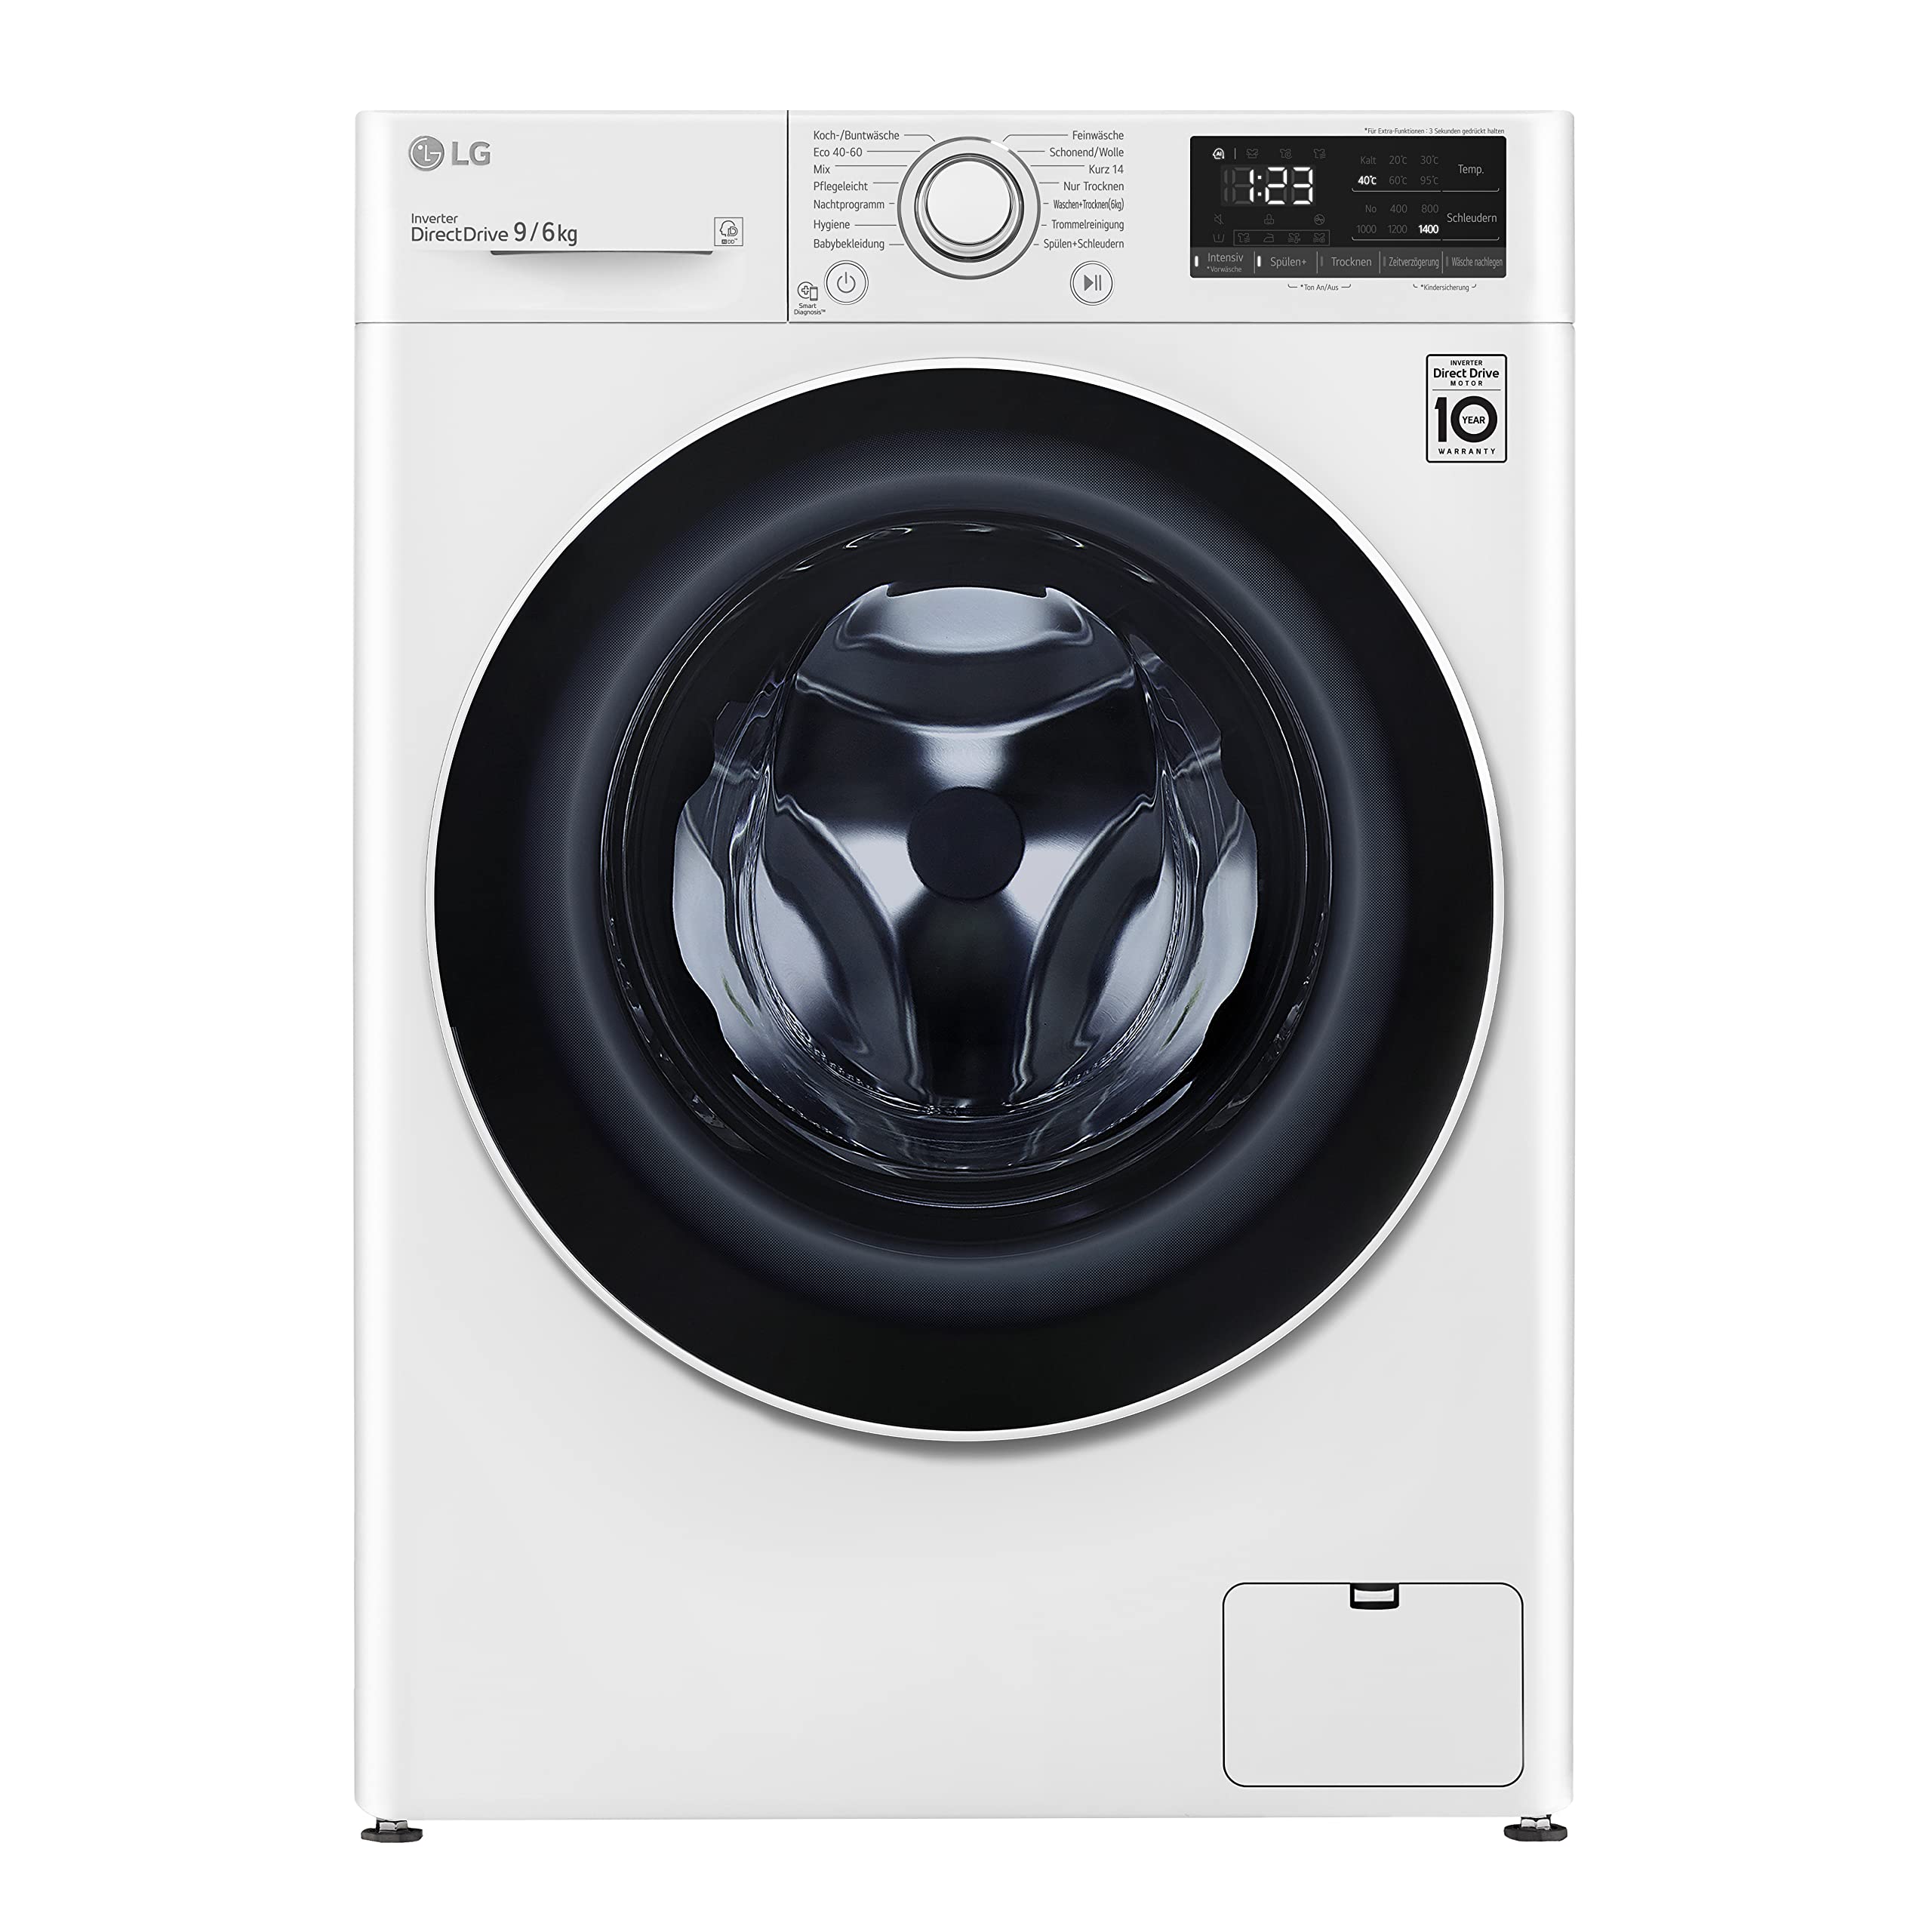 LG Electronics F14WD96EN0B Waschtrockner | 9 kg Waschen | 6 kg Trocknen | Weiß mit weißem Bullaugenring